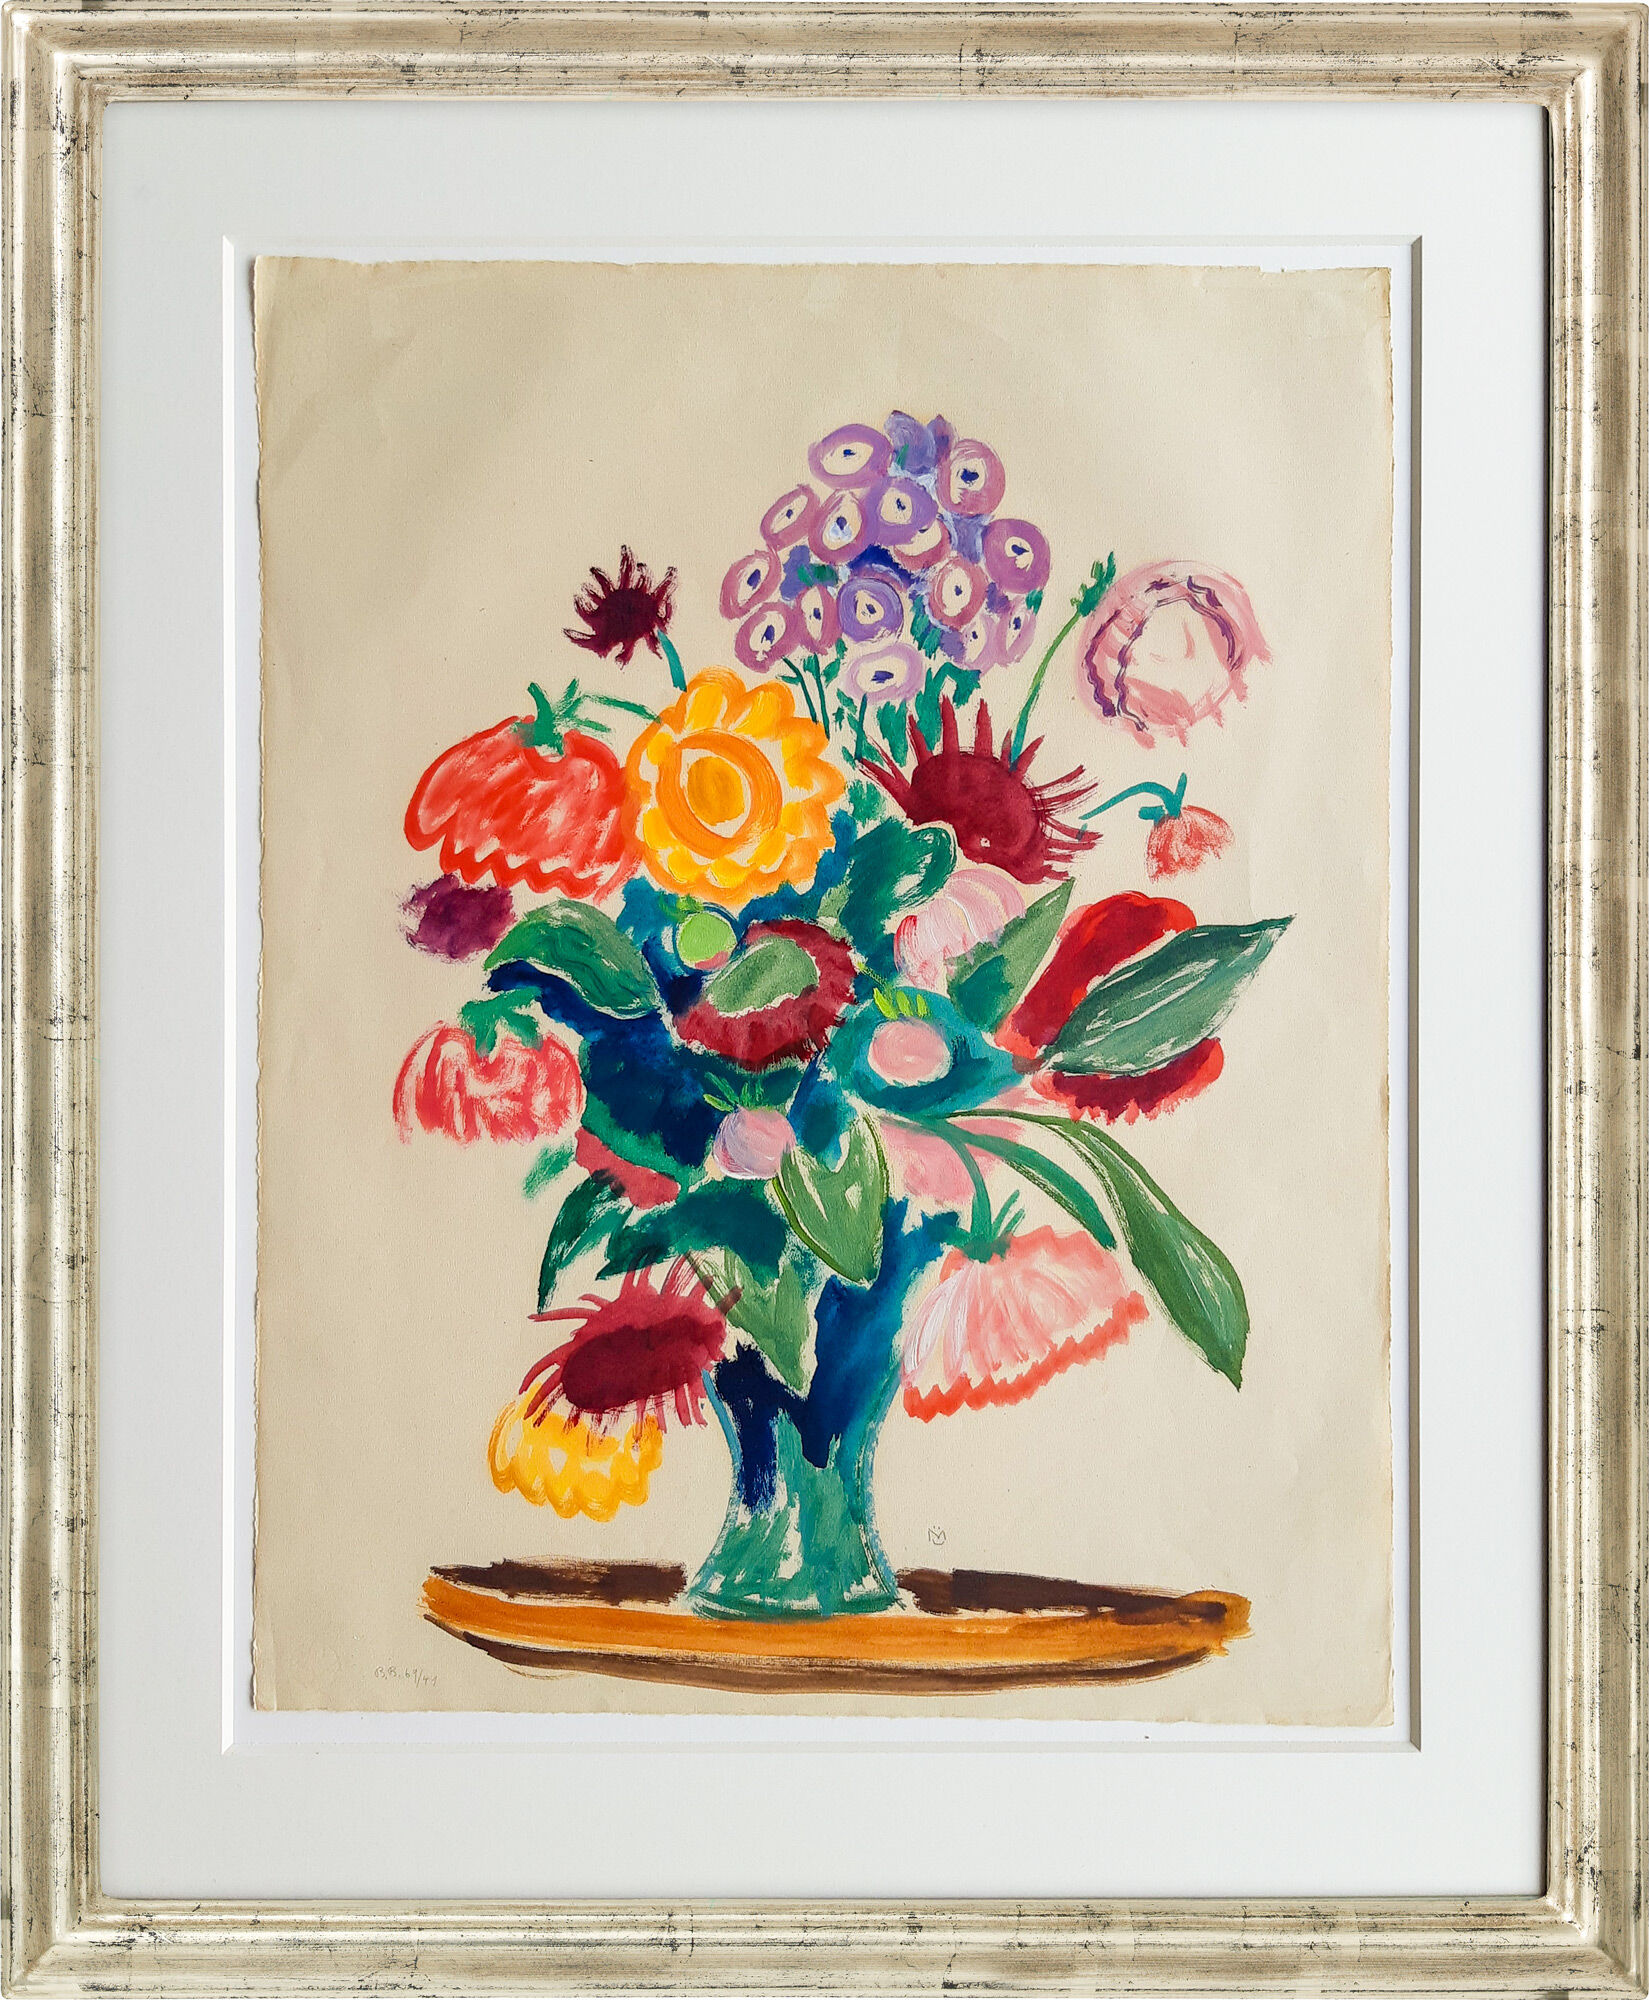 Picture "Dahlia Bouquet with Phlox" (1941) (Unique piece) by Gabriele Münter